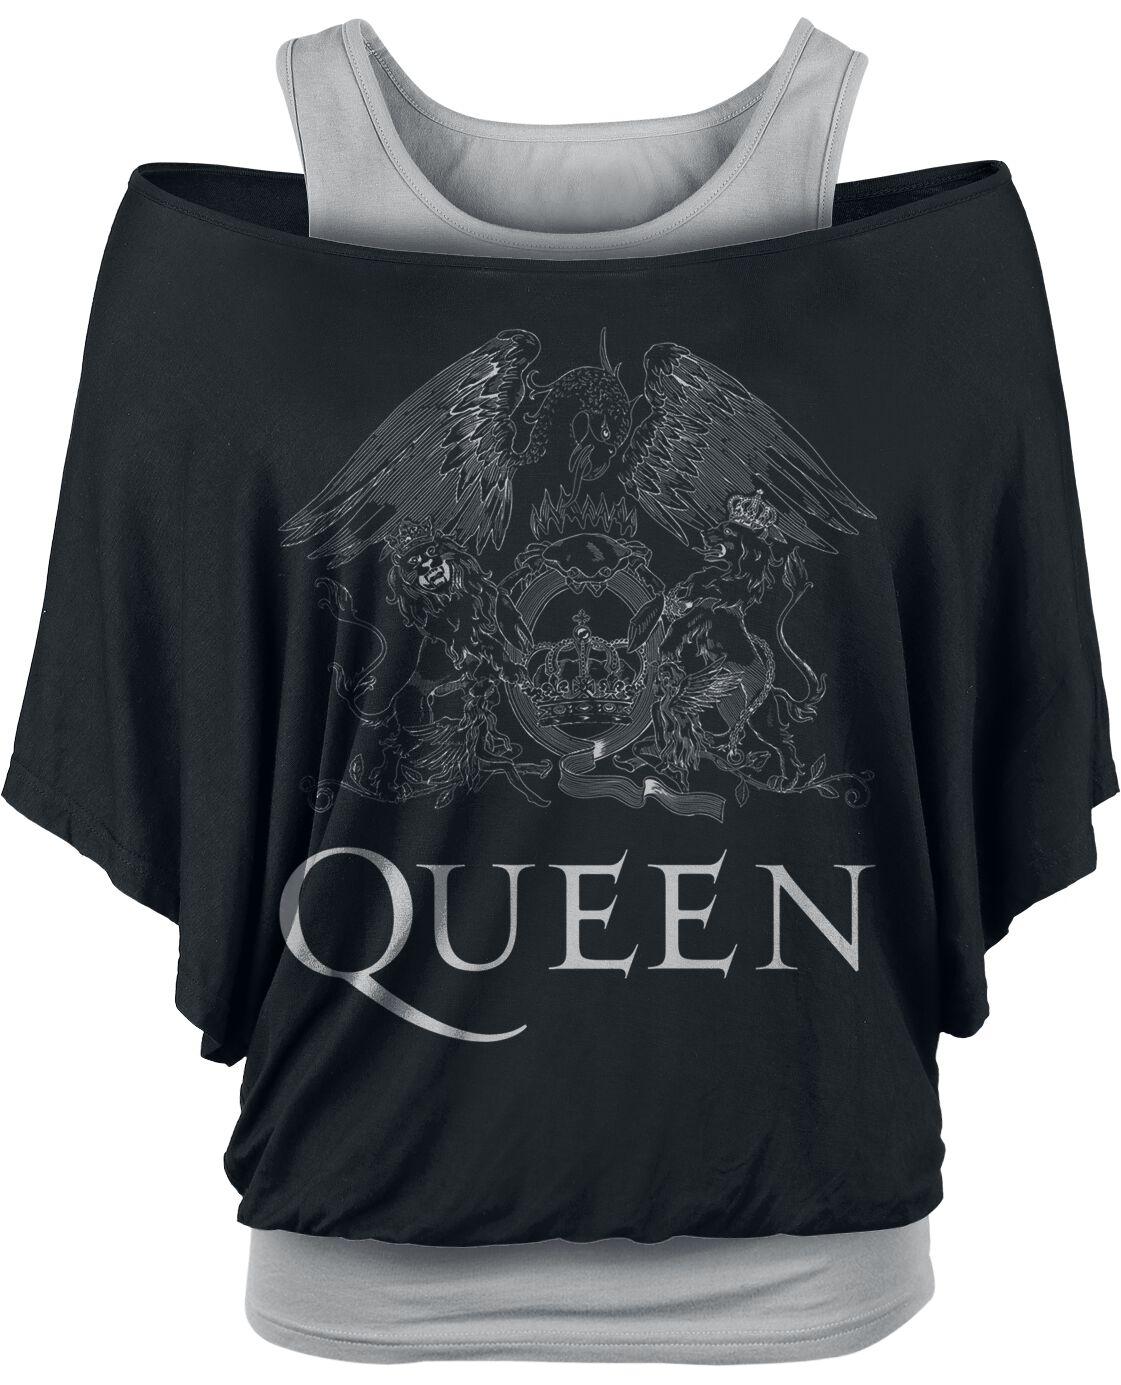 Image of T-Shirt di Queen - Crest Logo - L a XXL - Donna - nero/grigio